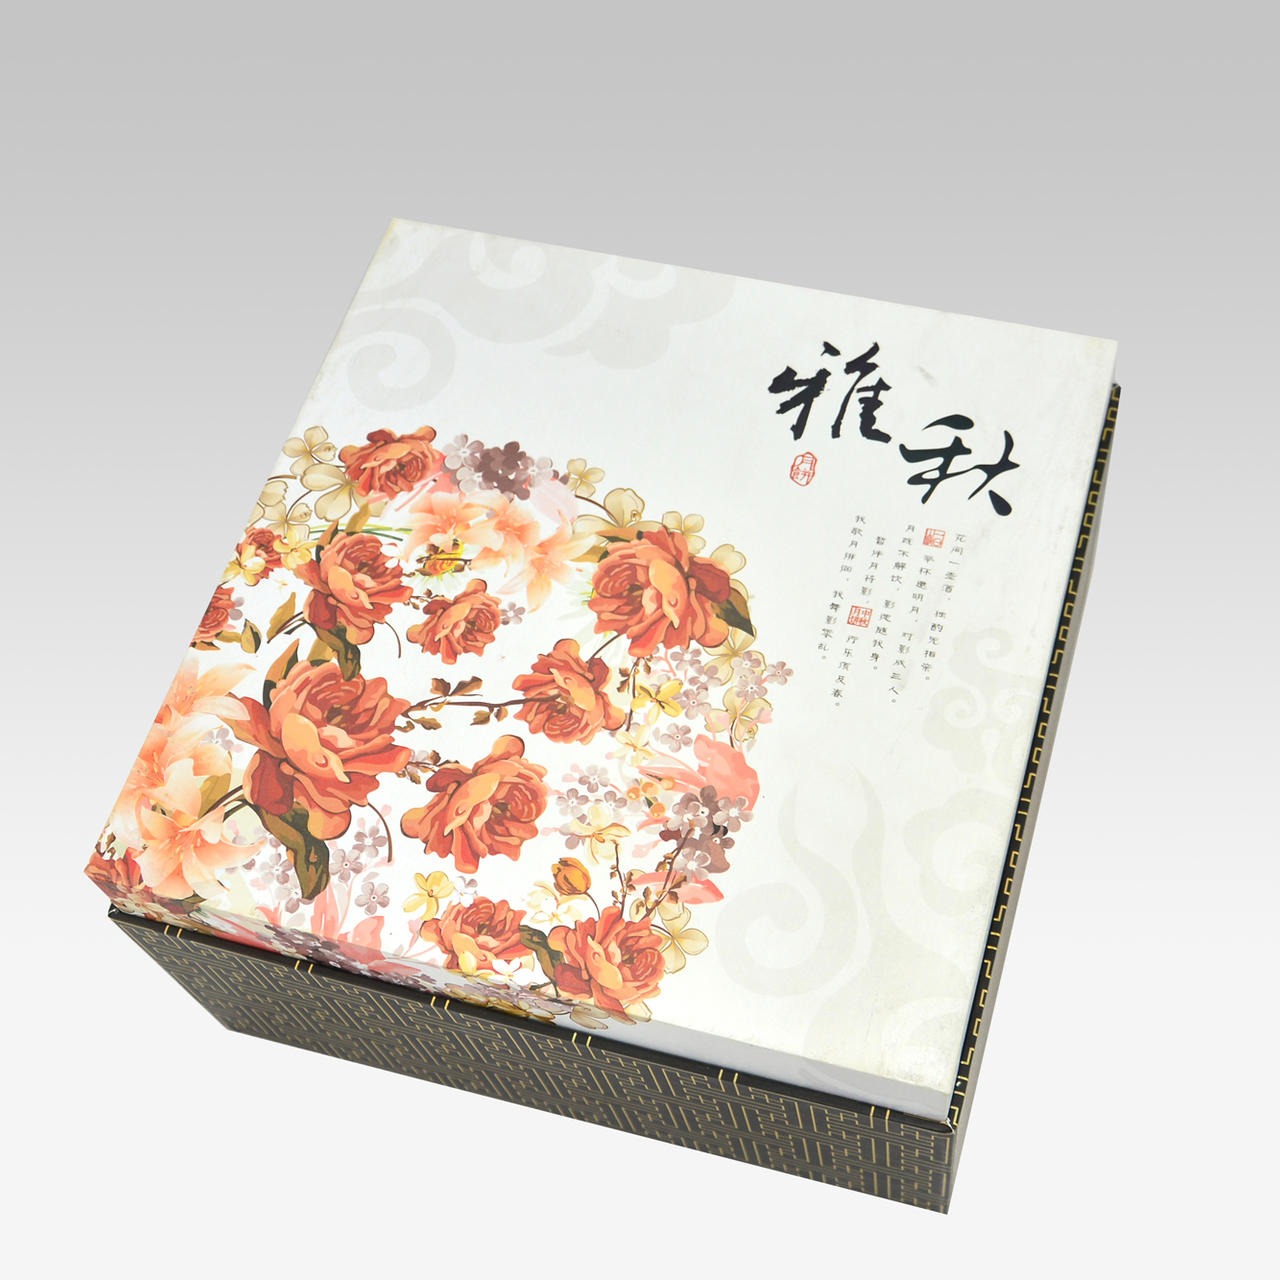 精美典雅月饼包装盒 南京包装盒源创包装设计制作图片